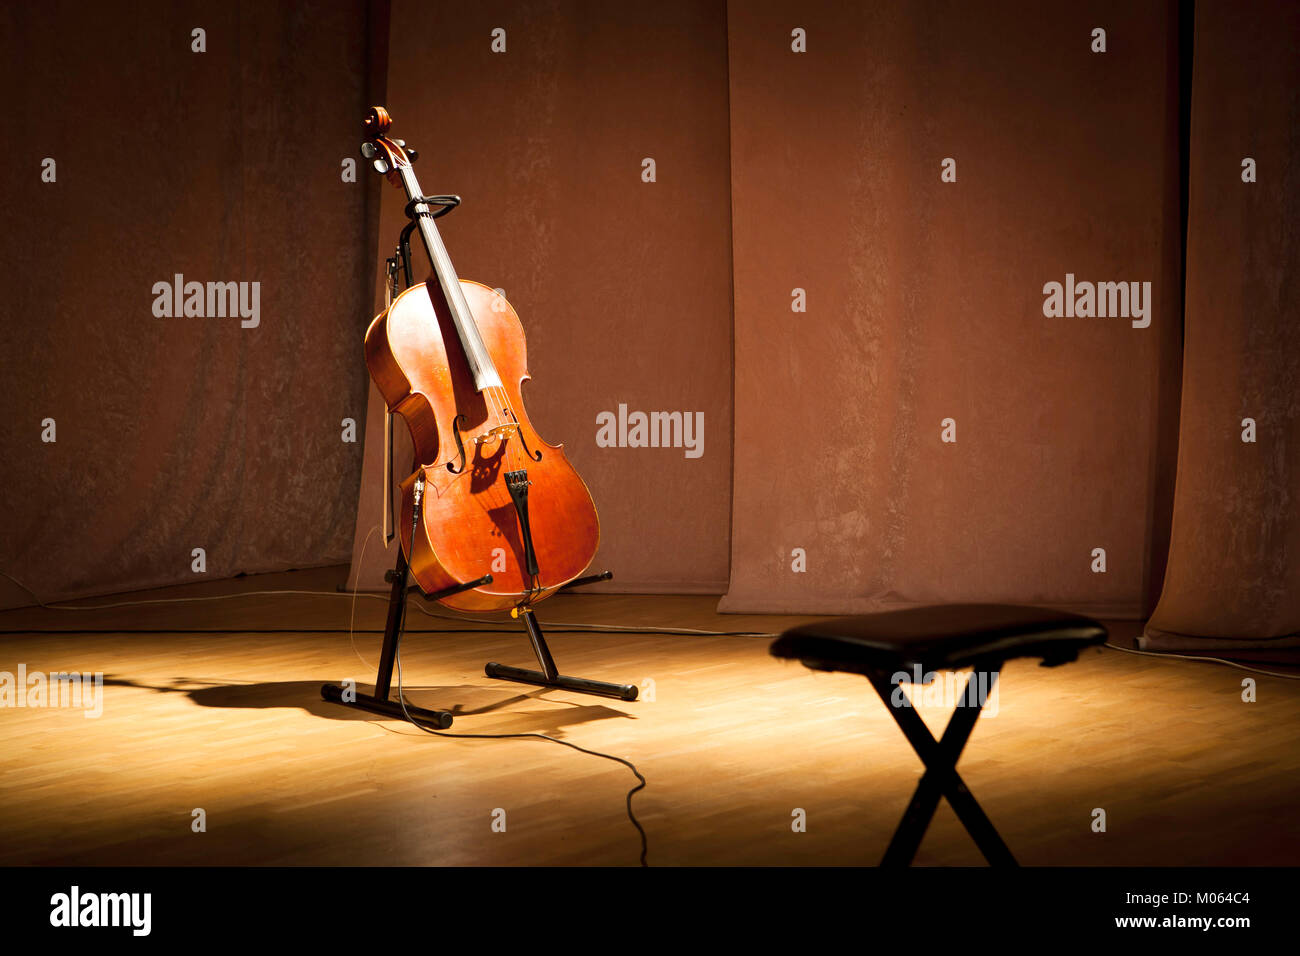 Instrument de musique violoncelle sur une scène Banque D'Images